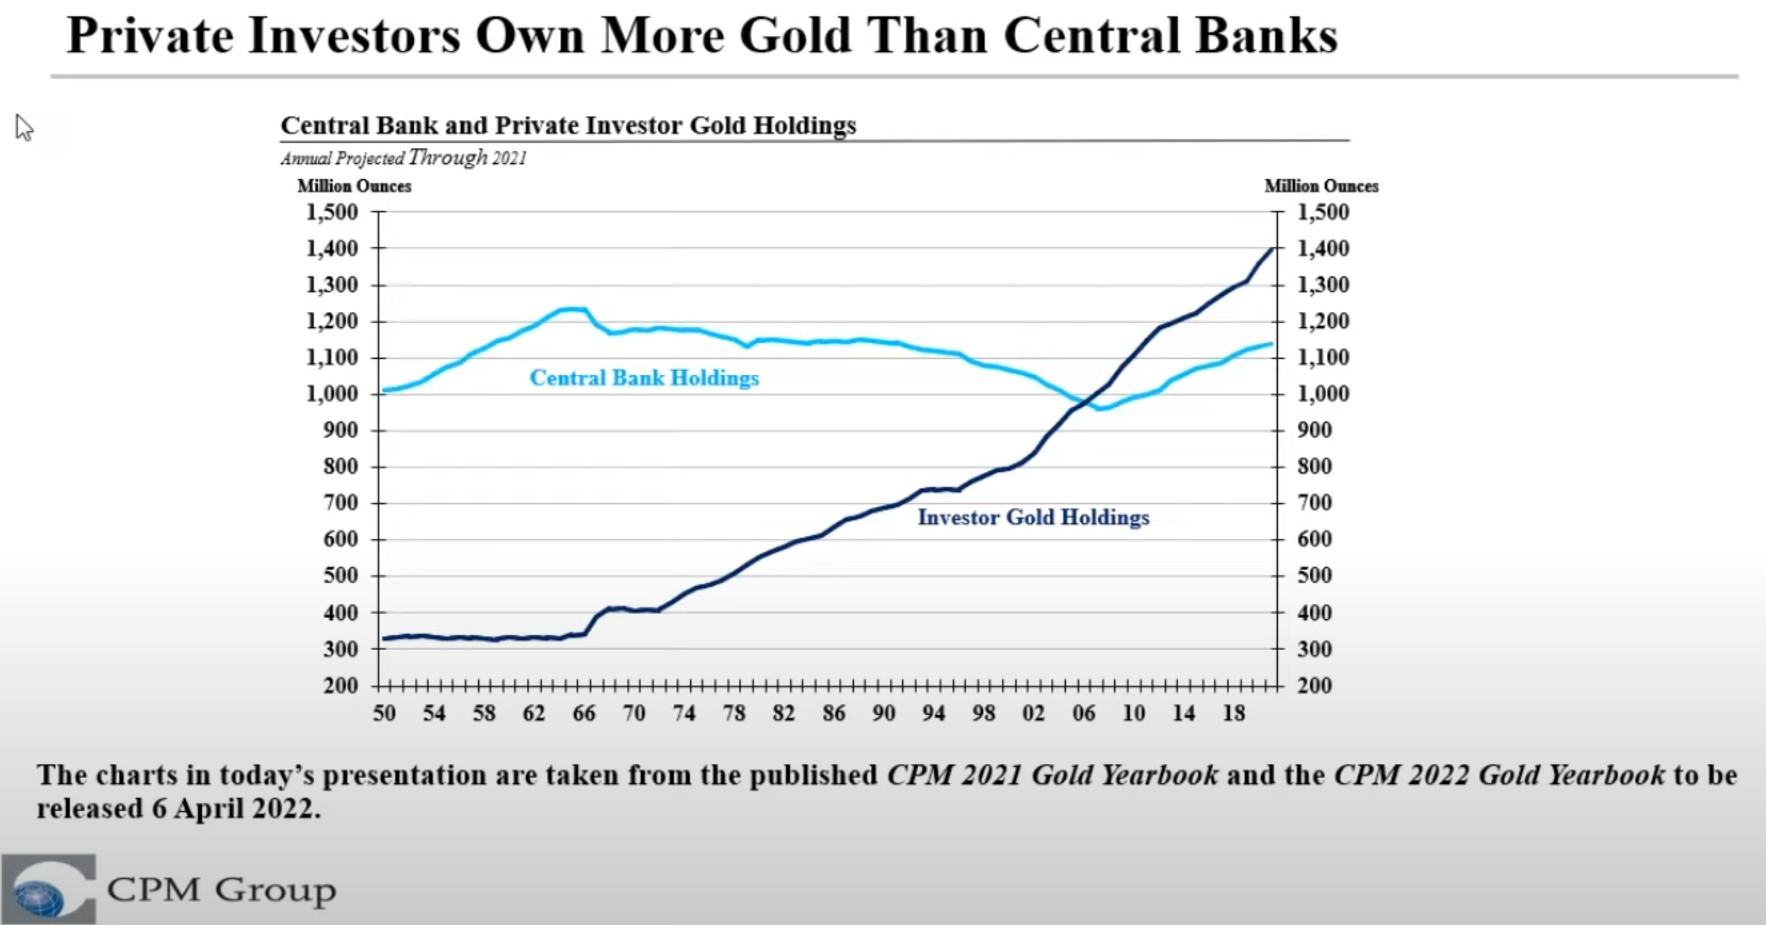 graphique des investissements en or pour le particulier et les banques centrales